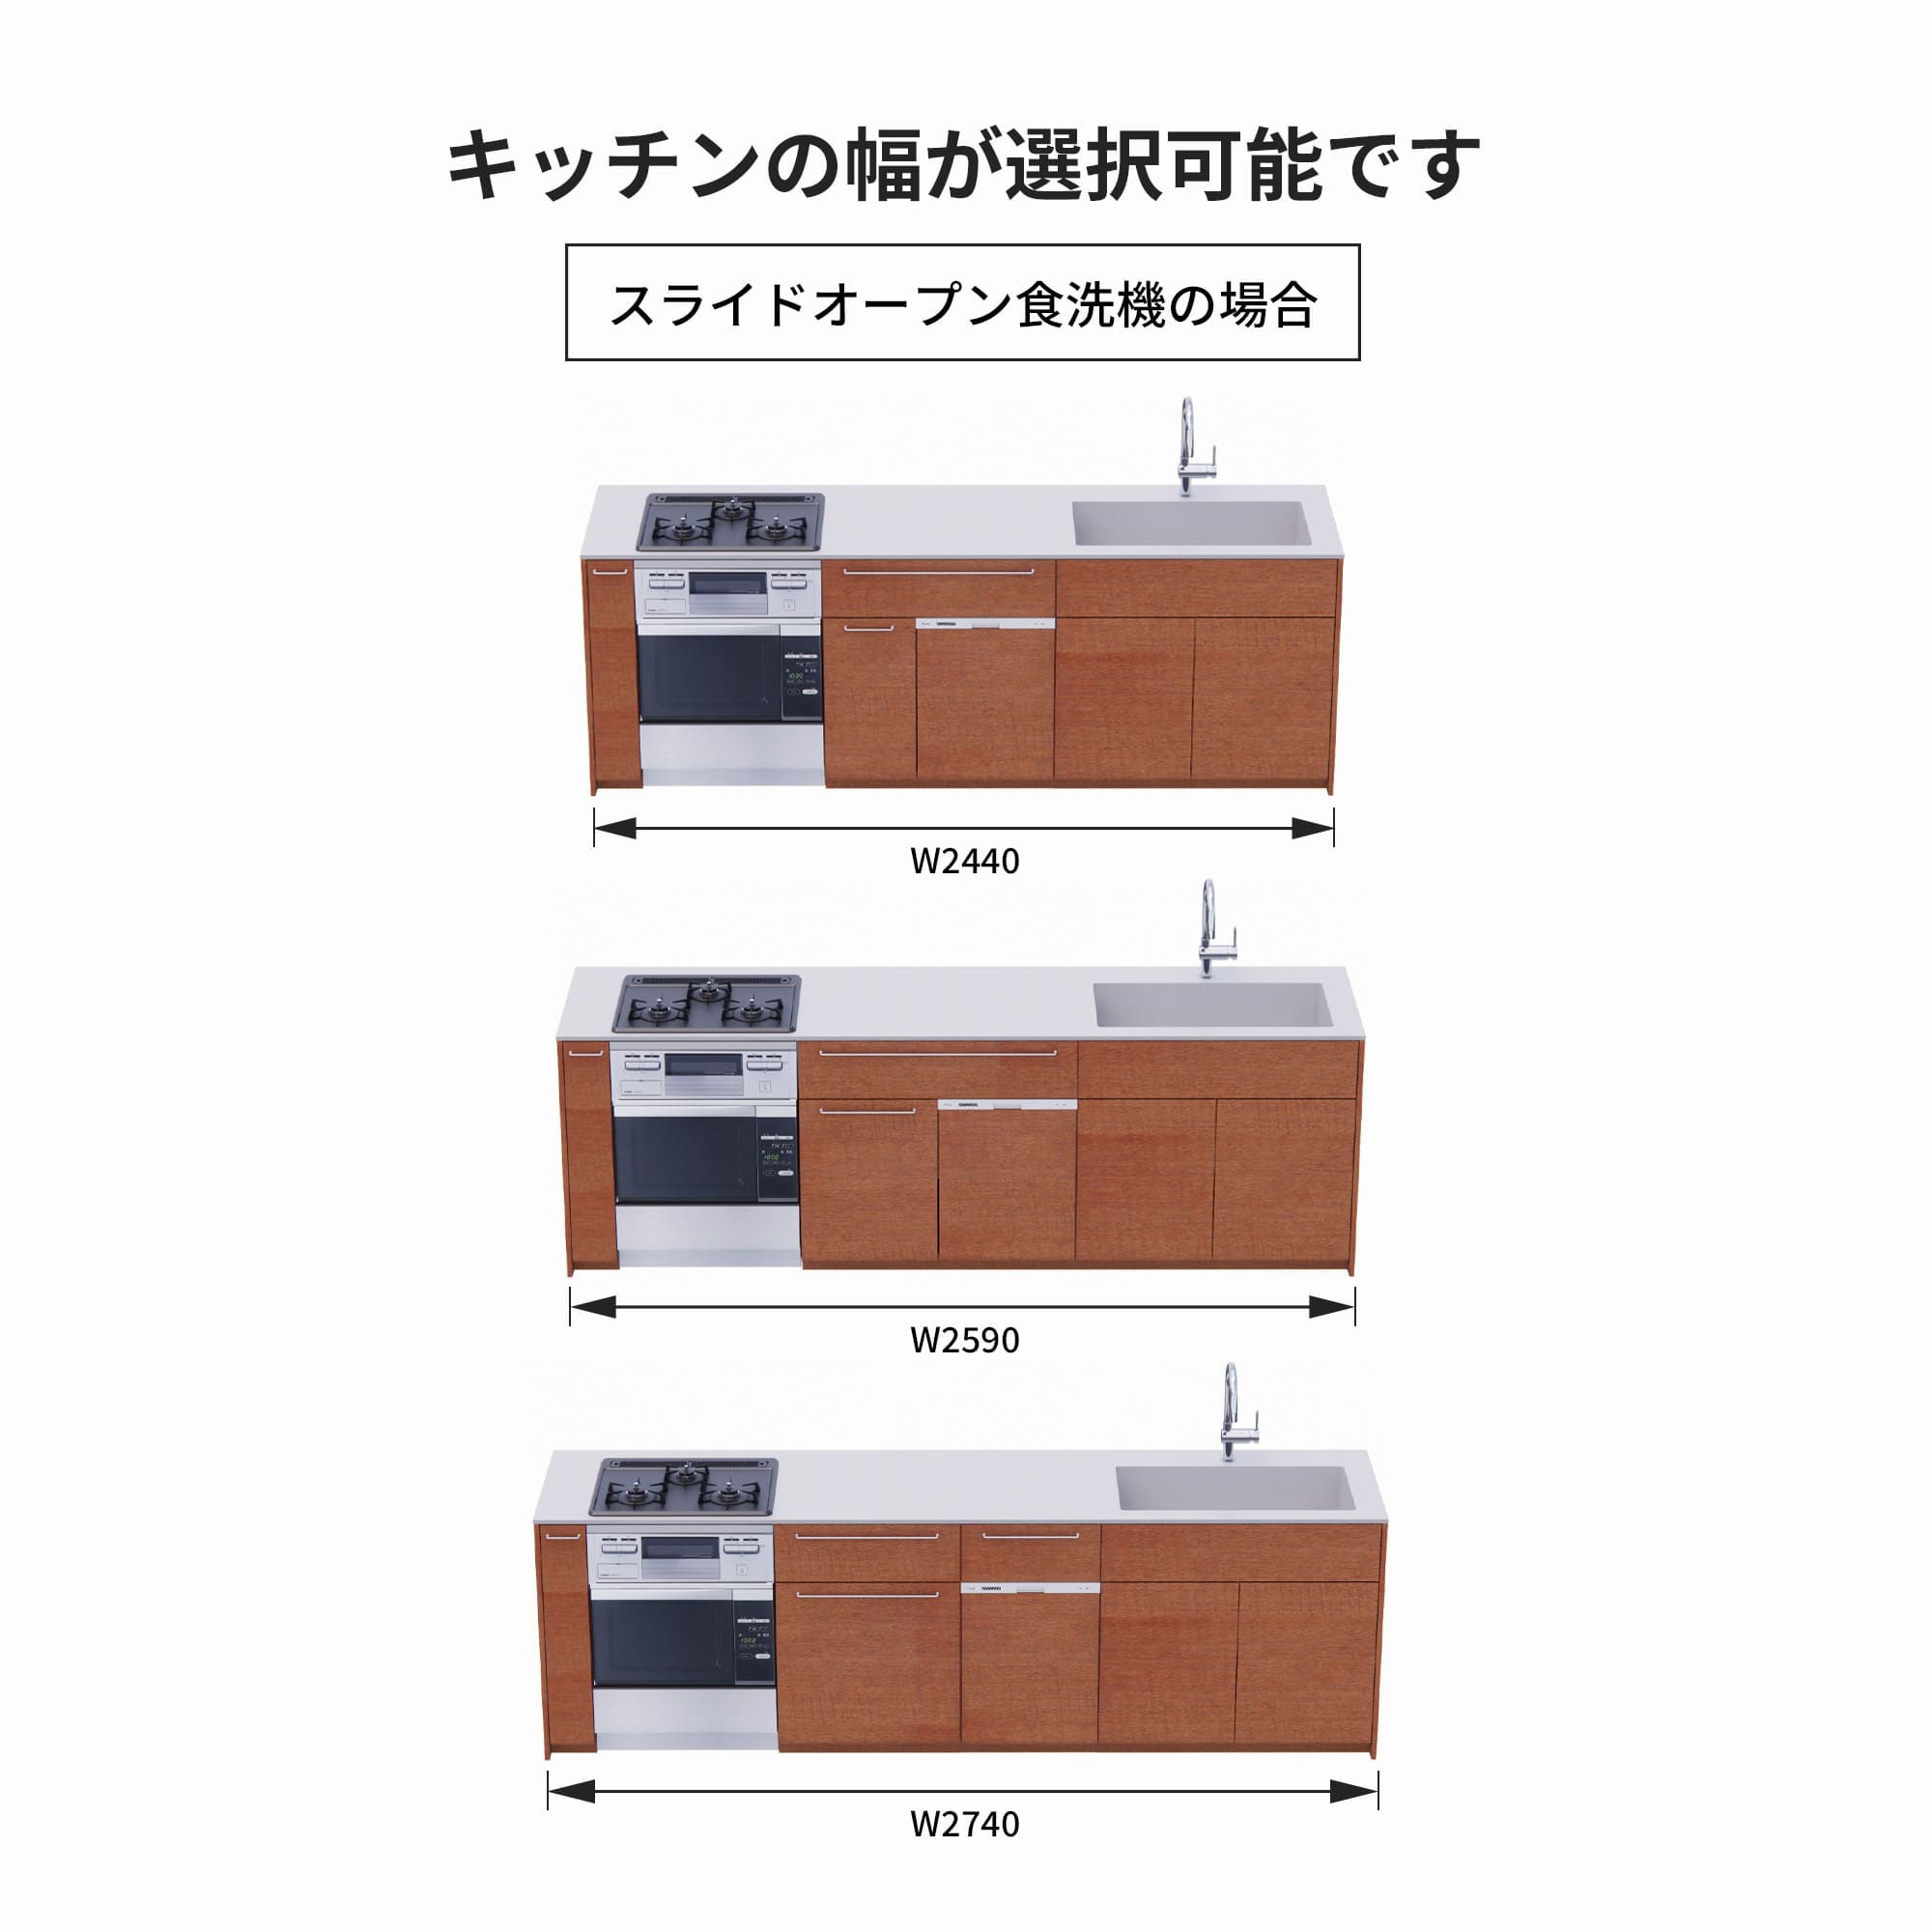 木製システムキッチン 対面型 W2440～2740・コンロあり / オーブンあり / 食洗機あり KB-KC022-46-G183 スライドオープンの場合